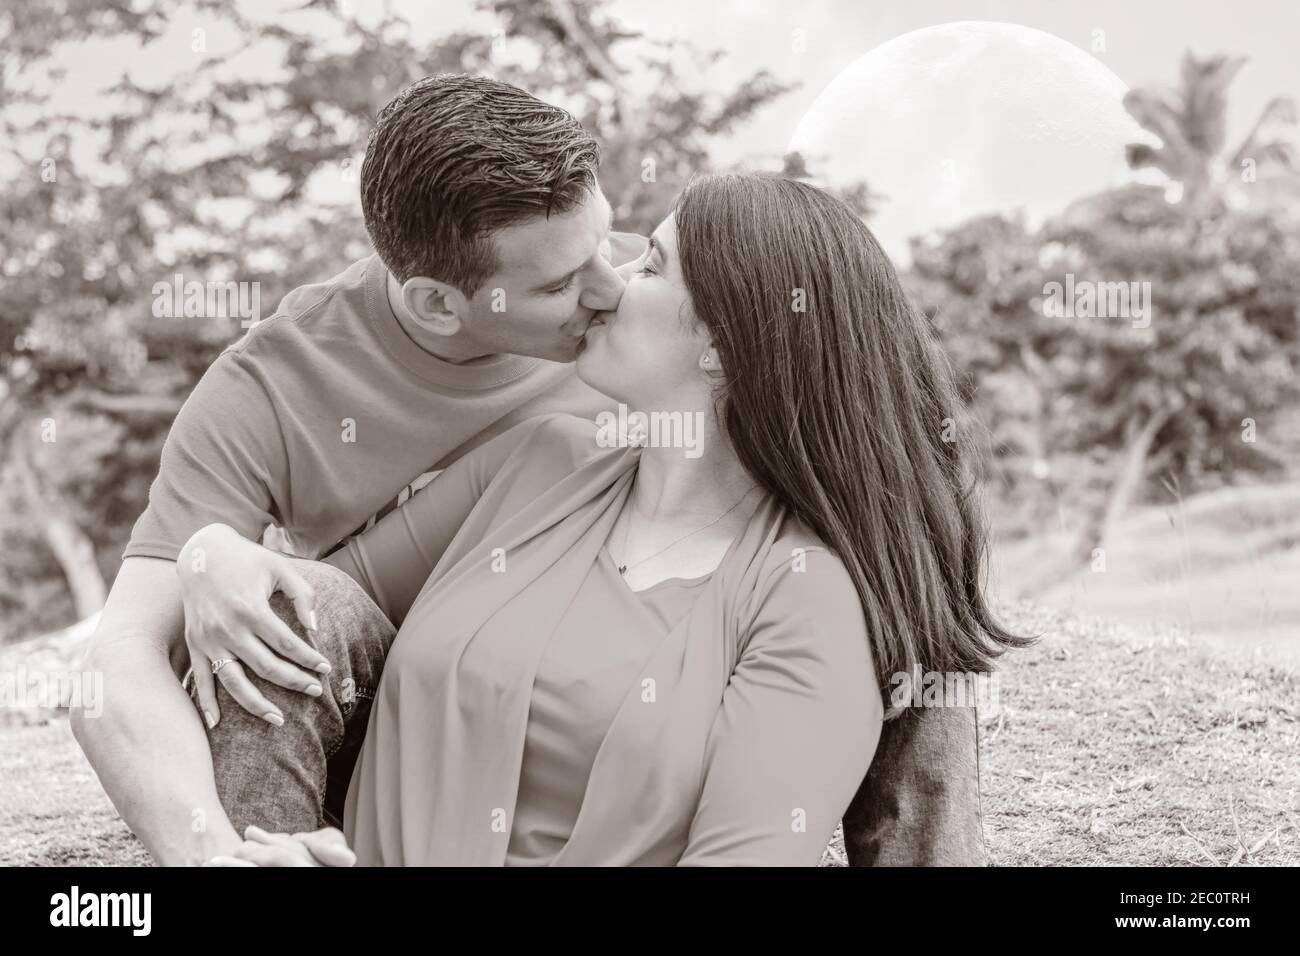 Fotos de compromiso de una pareja cubana Foto de stock